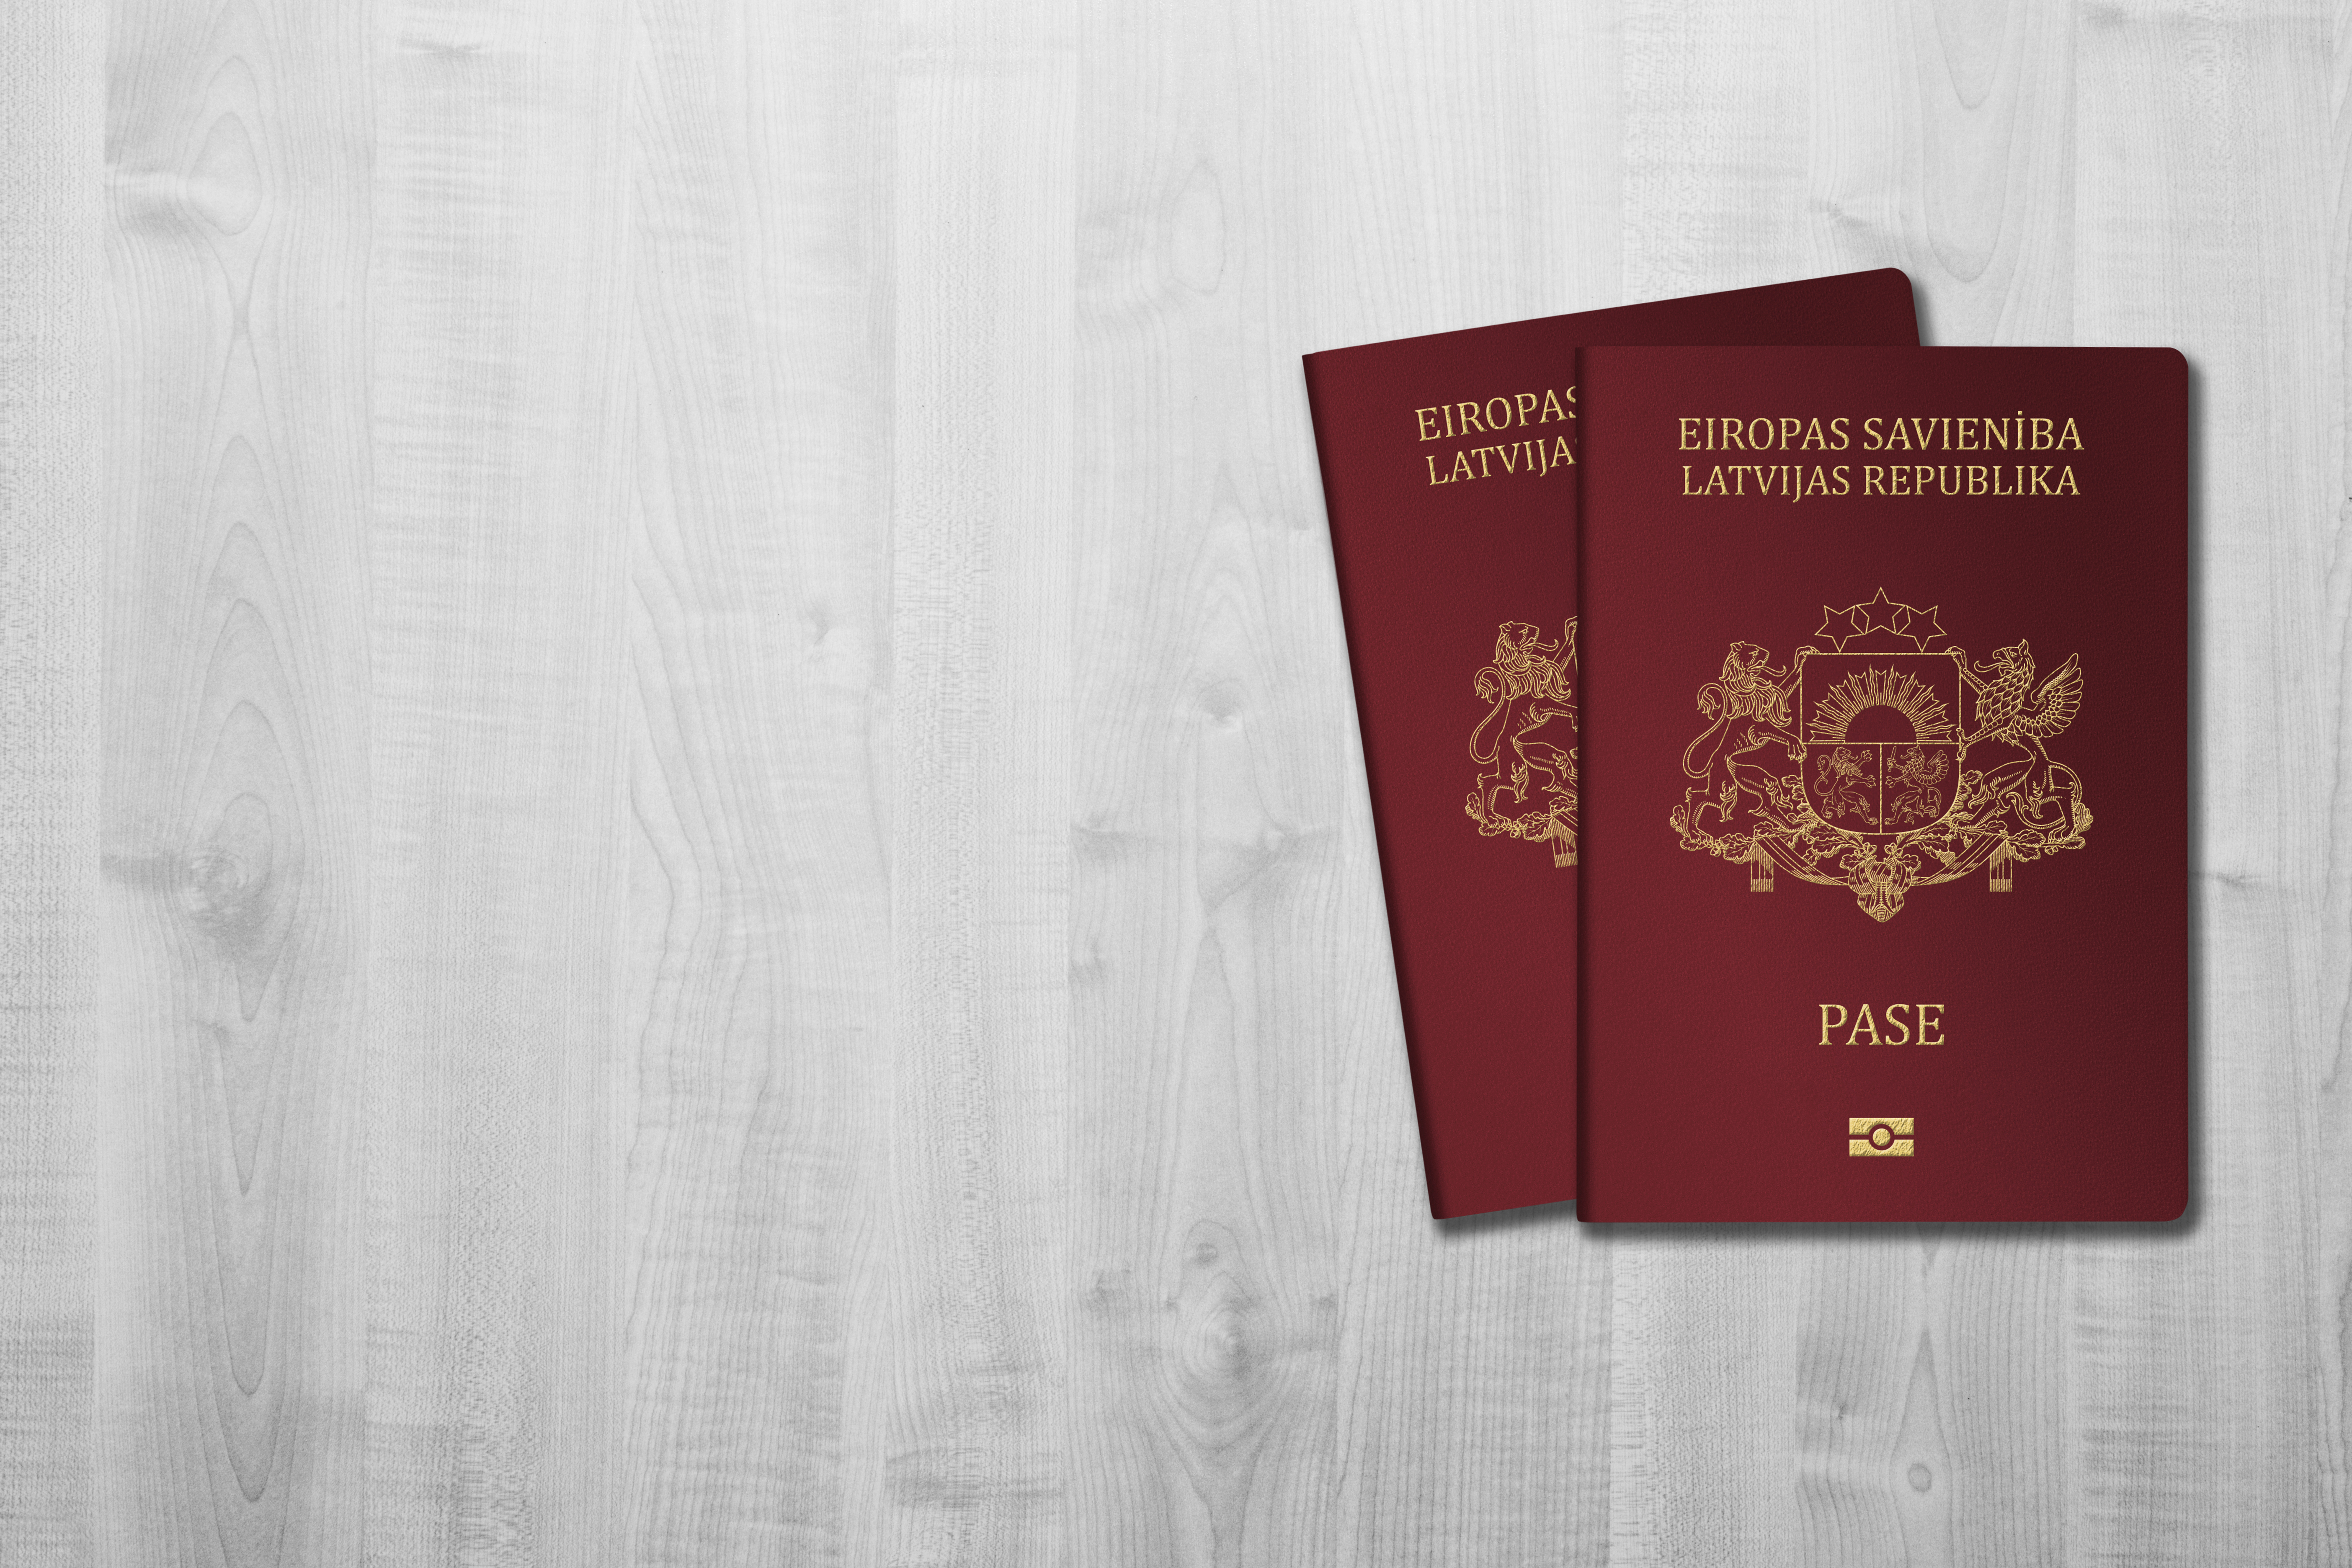 Паспорта Латвии, которые в итоге получает кандидат после обращения в управление по делам гражданства и миграции Латвии